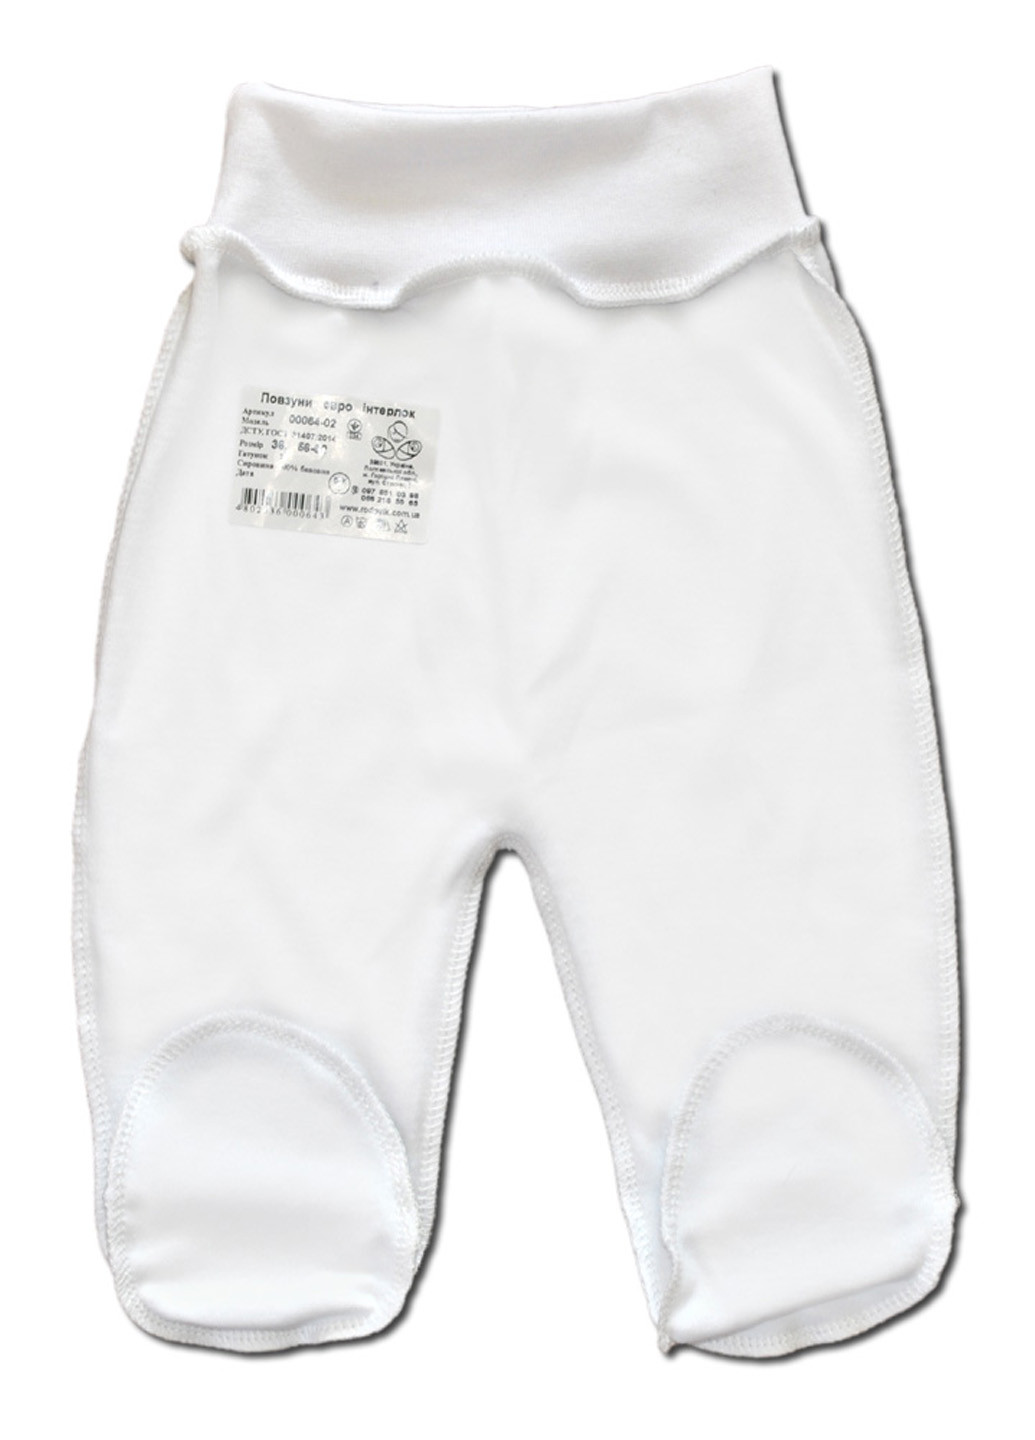 Белый демисезонный комплект одежды для малыша №6 (4 предмета) тм коллекция капитошка белый Родовик комплект БД-06